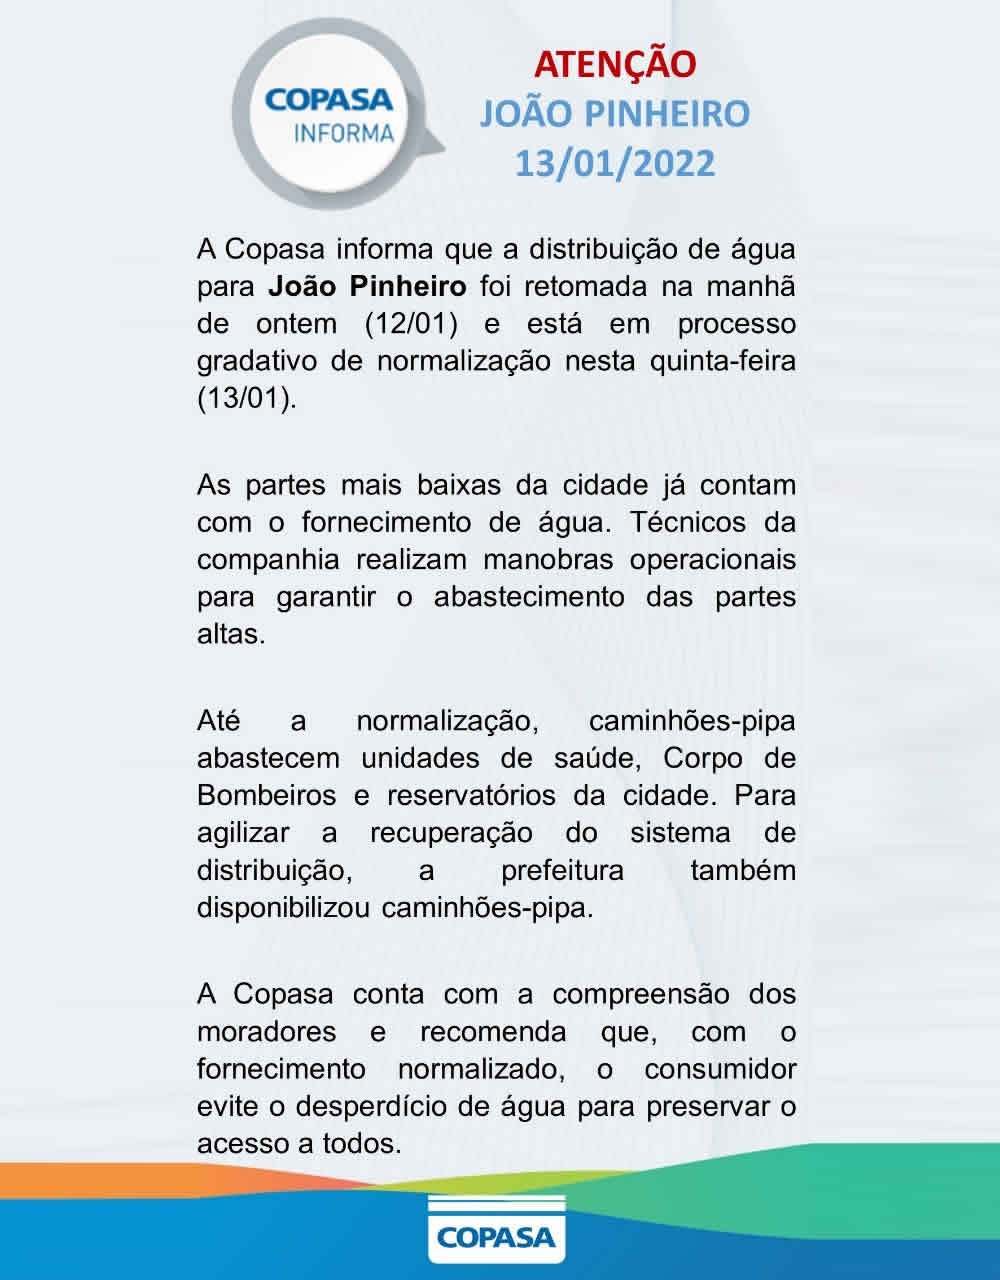 Copasa anuncia regularização gradual no fornecimento de água em João Pinheiro